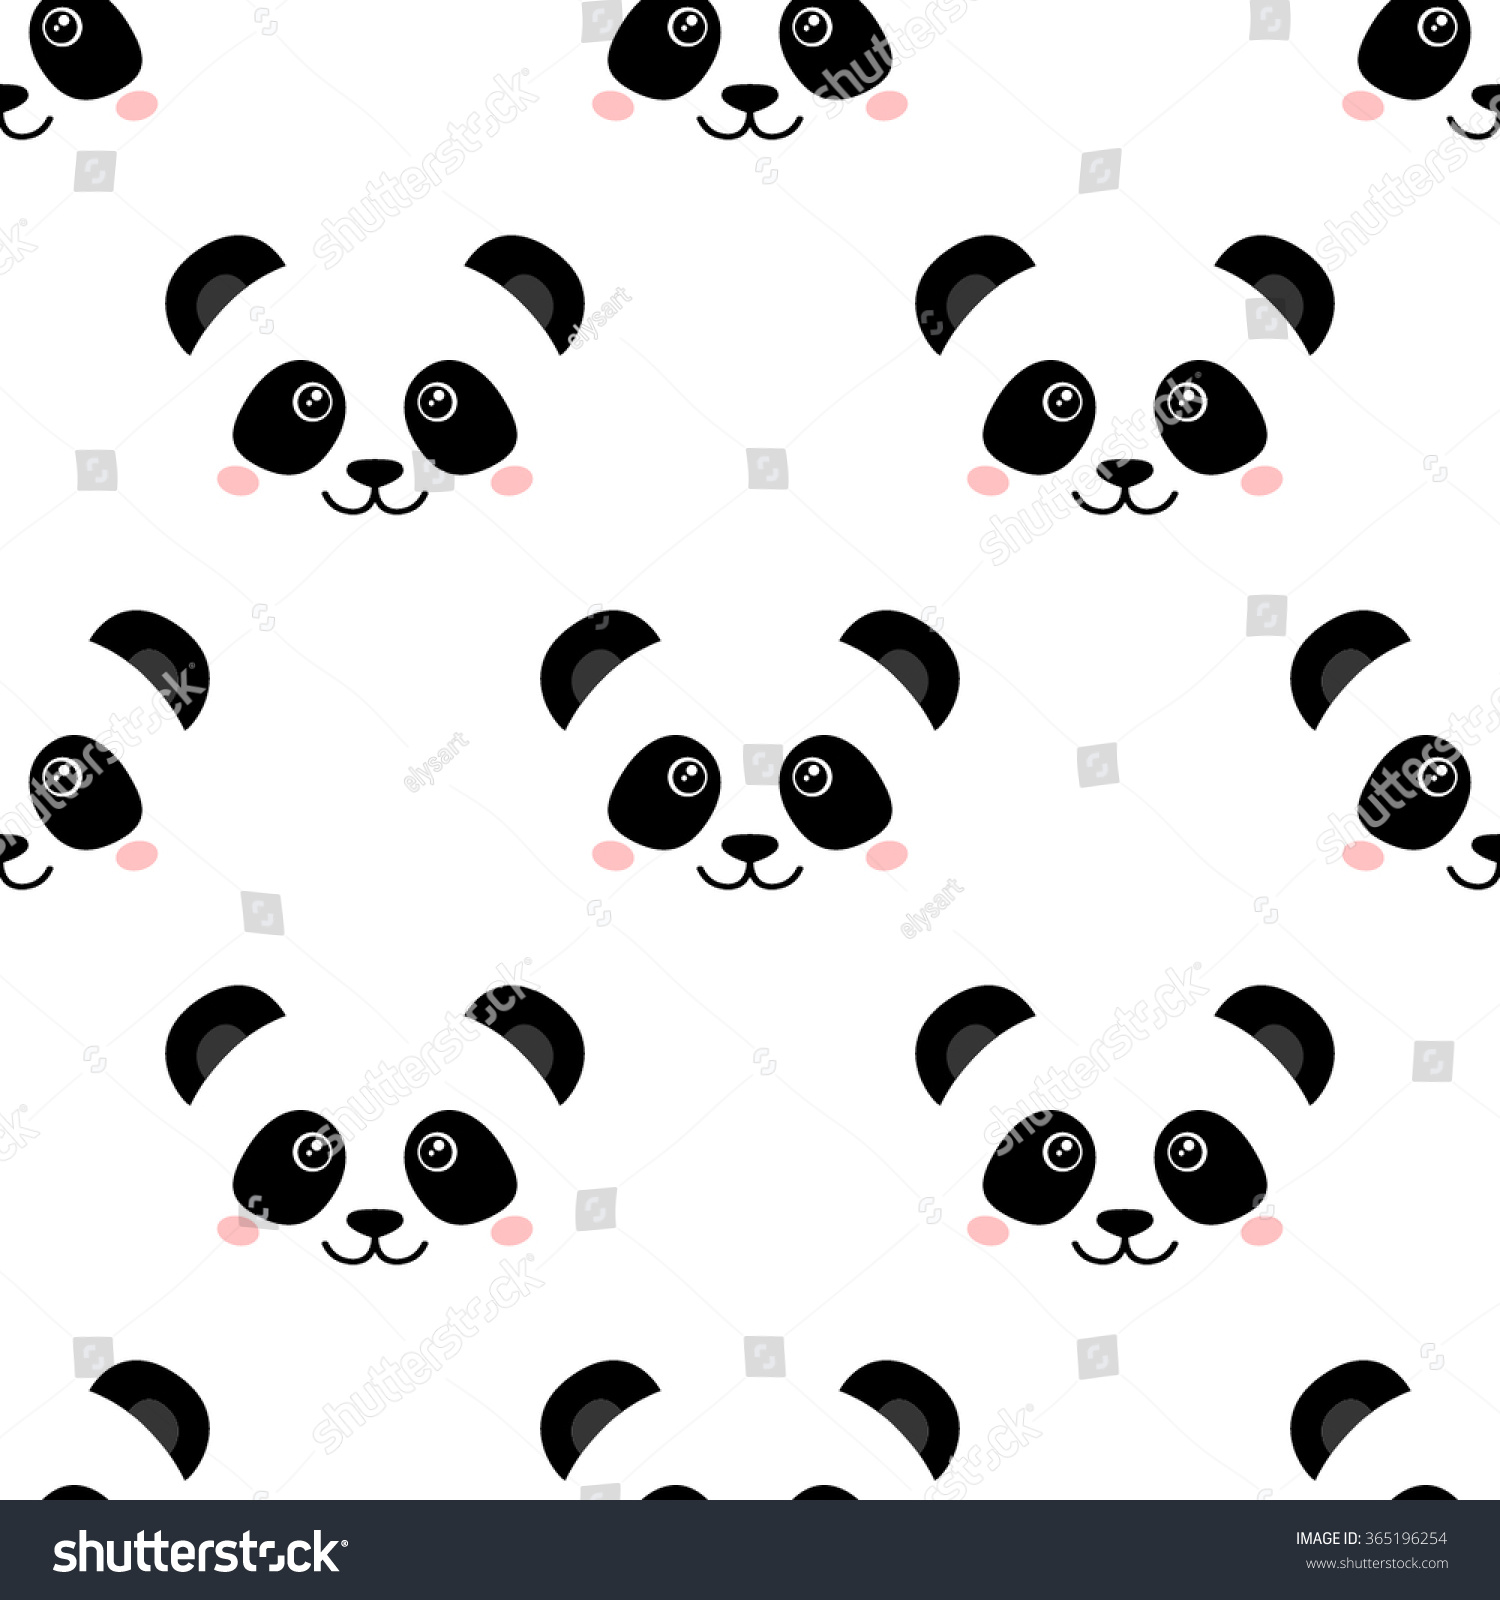 Royalty Free Cute Panda Face Seamless Wallpaper 365196254 Stock